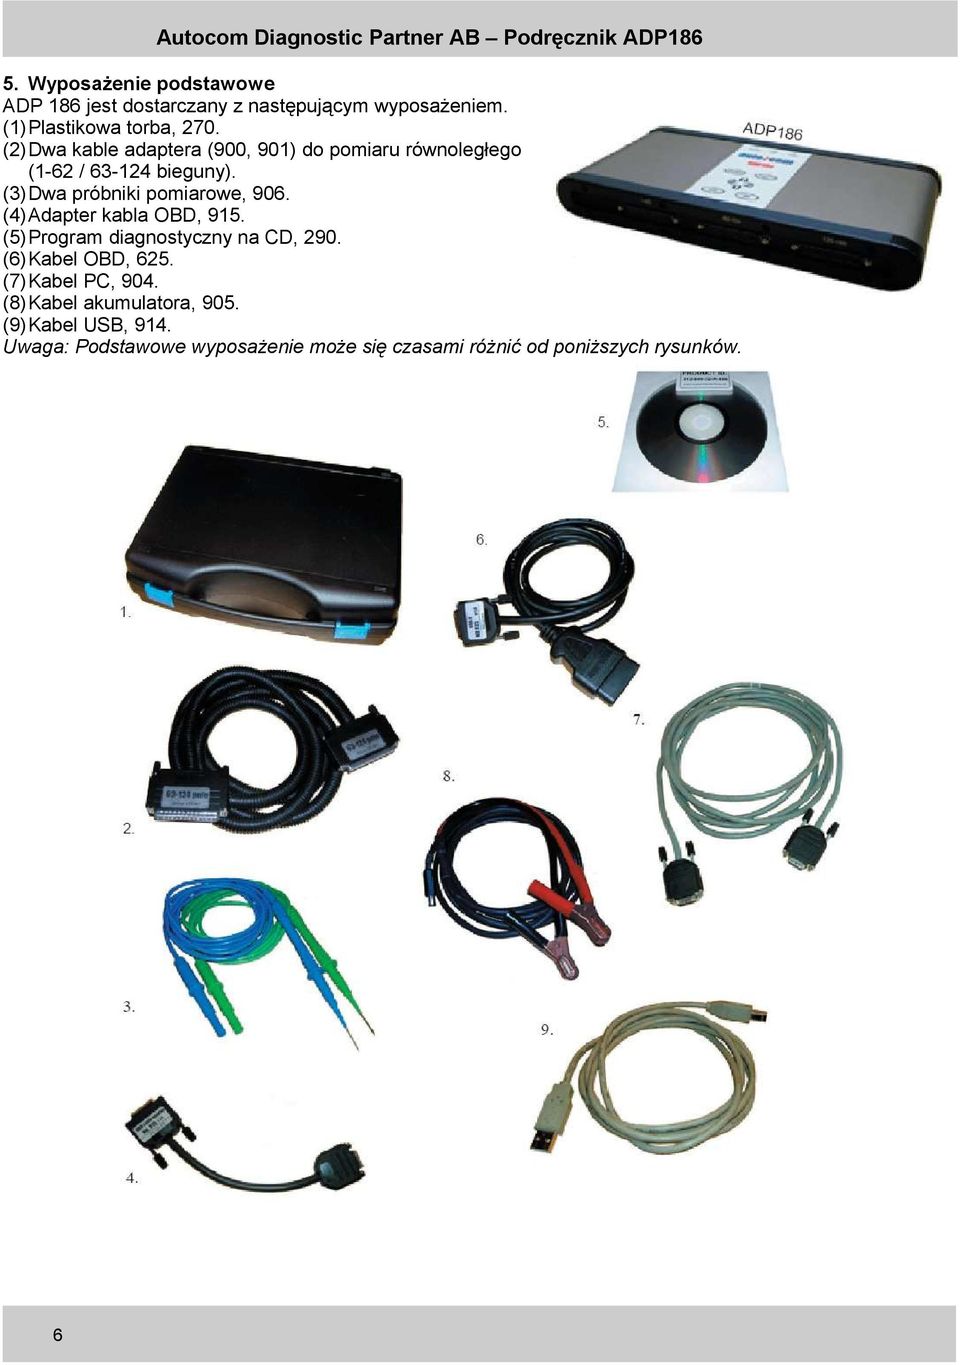 (3)Dwa próbniki pomiarowe, 906. (4)Adapter kabla OBD, 915. (5)Program diagnostyczny na CD, 290.